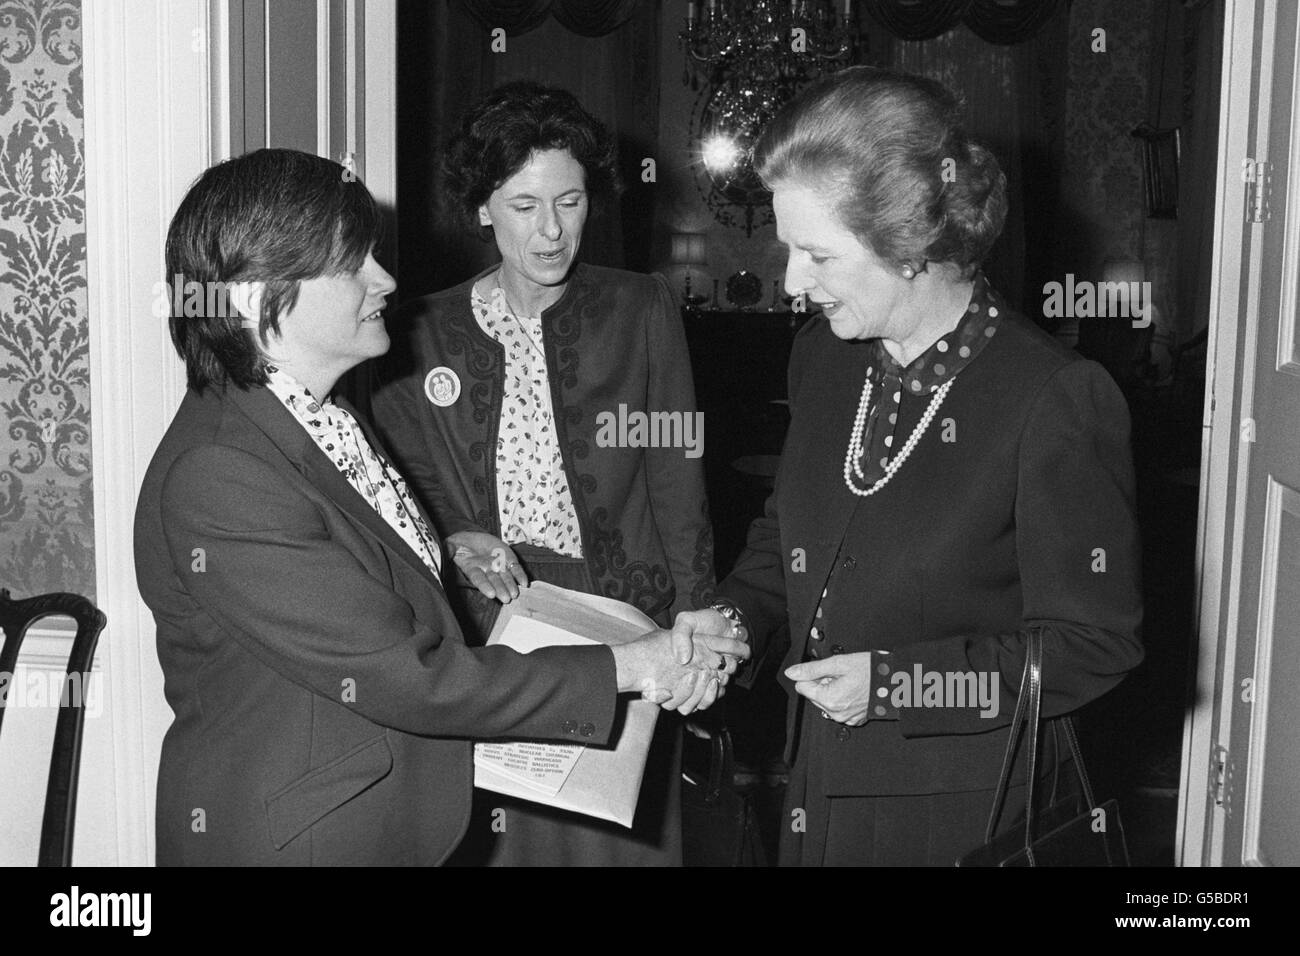 Premierministerin Margaret Thatcher, rechts, begrüßt Ann Widdecombe, links, mit Lady Olga Maitland während eines Empfangs in der Downing Street Nr. 10 für Mitglieder der Frauen und Familien der Verteidigung, Auf der eine Petition eingereicht wurde, um „die Anerkennung Großbritanniens für die Errungenschaften der NATO bei der Erhaltung des Friedens in Europa für 35 Jahre zu Protokoll zu geben“. Stockfoto